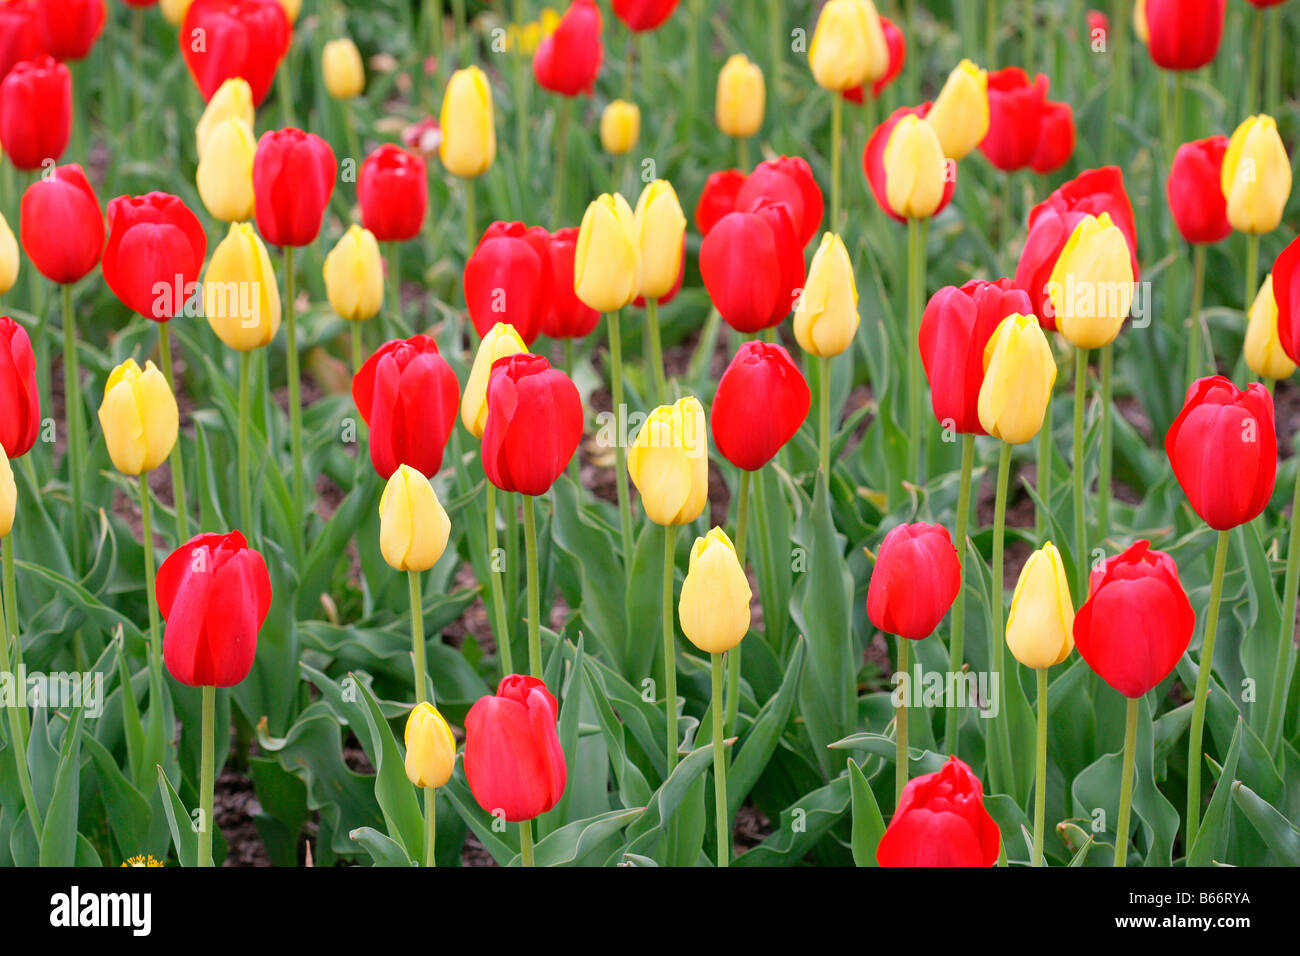 Plan de tulipes rouges et jaunes Banque D'Images